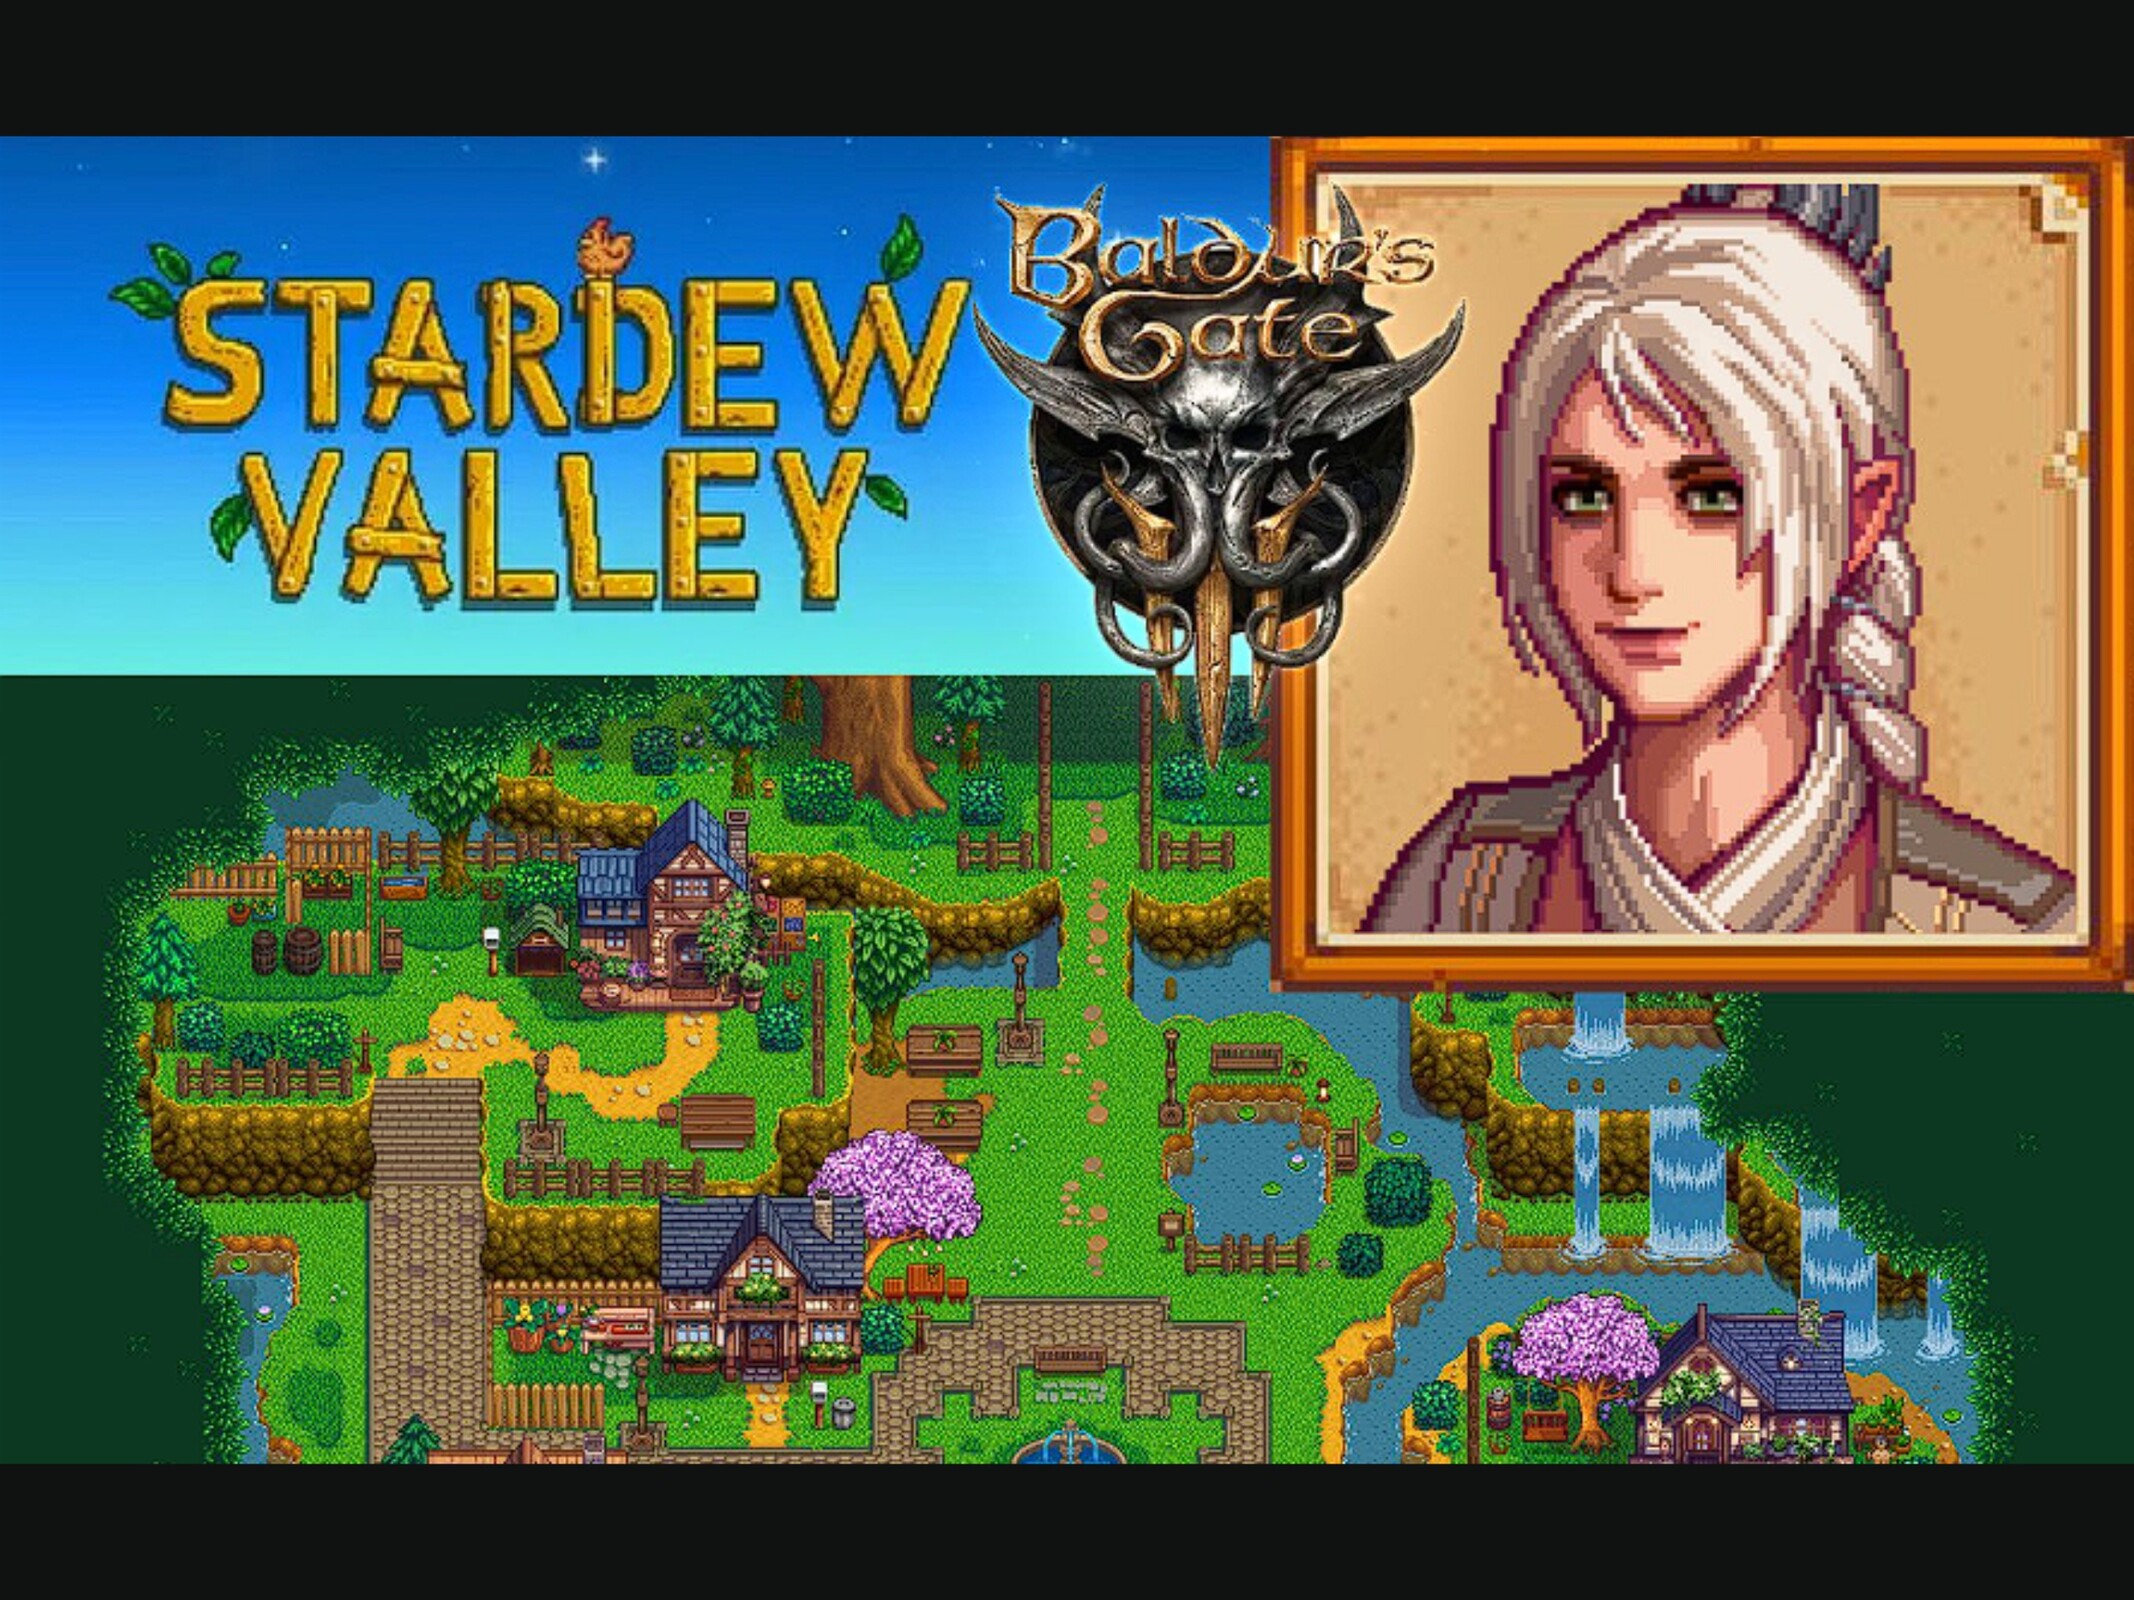 La aldea de Baldur El nuevo mod de Stardew Valley trae al juego los personajes de Baldur's Gate